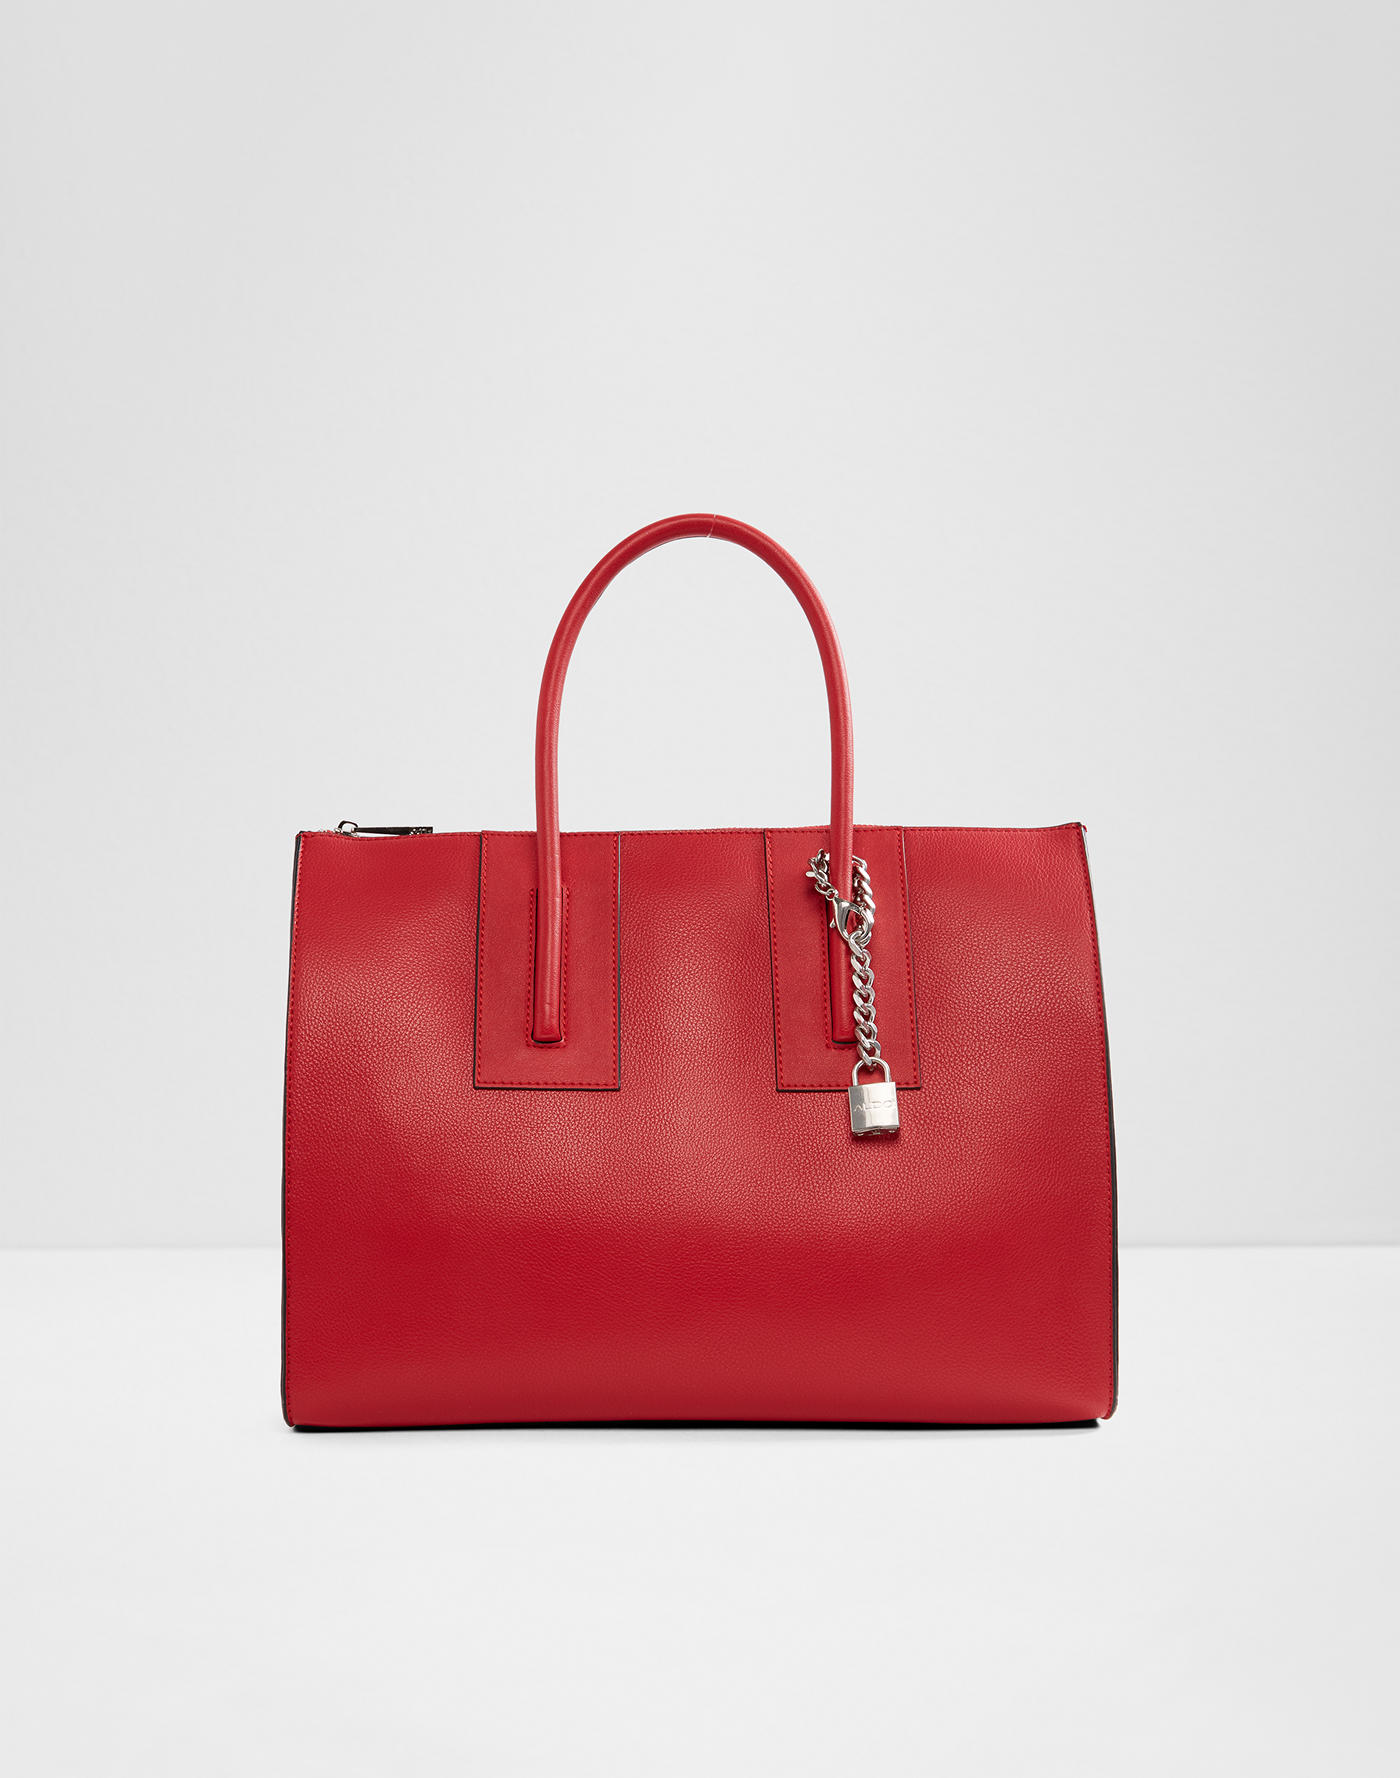 Handbags | ALDO UK